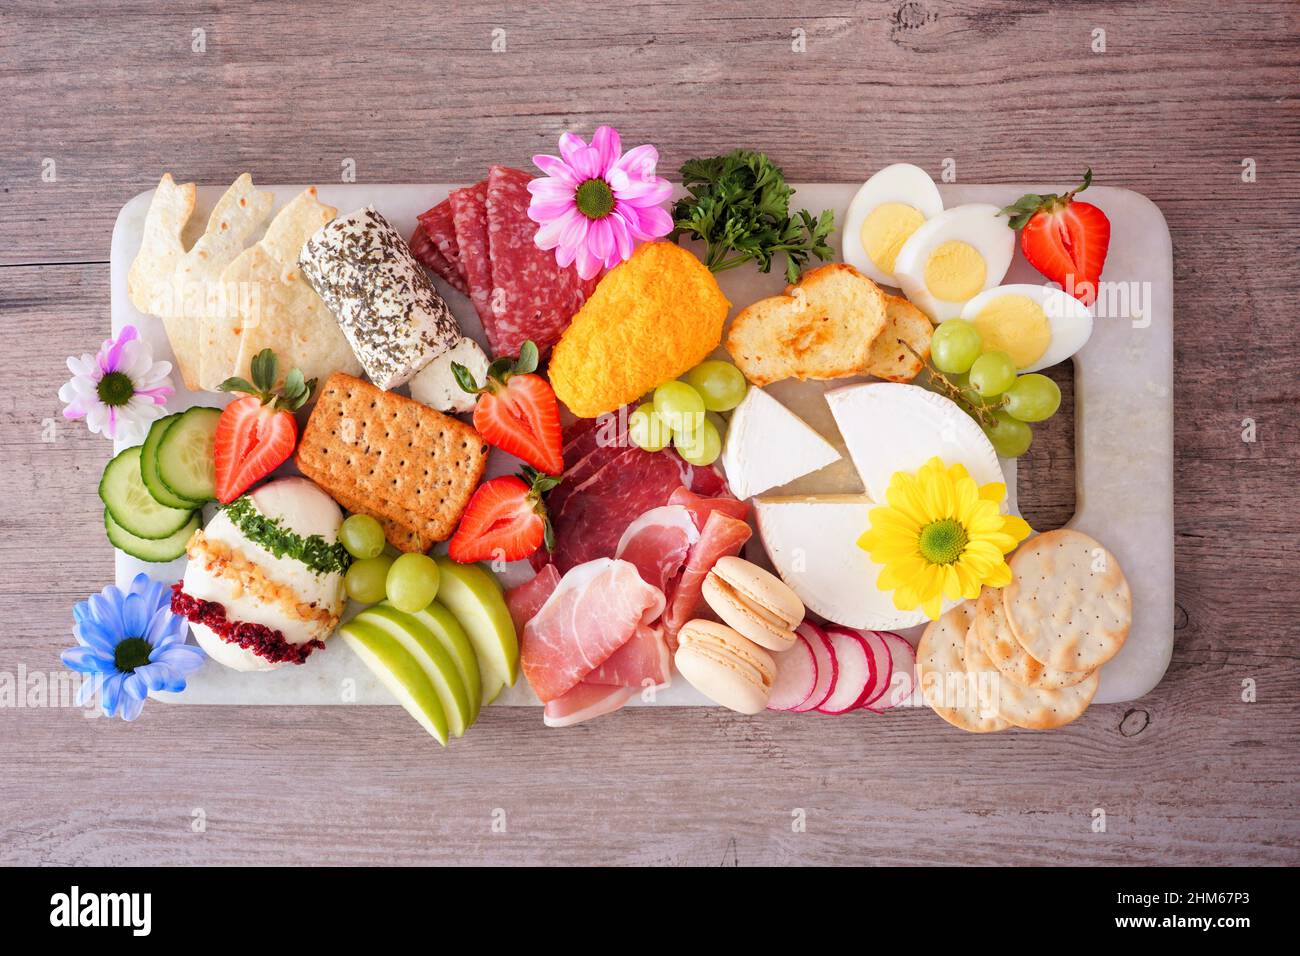 Charcuterie-Tafel mit Frühlings- oder Ostermotiven vor einem Holzhintergrund. Verschiedene Vorspeisen mit Käse, Fleisch, Obst und Gemüse. Ansicht von oben. Stockfoto